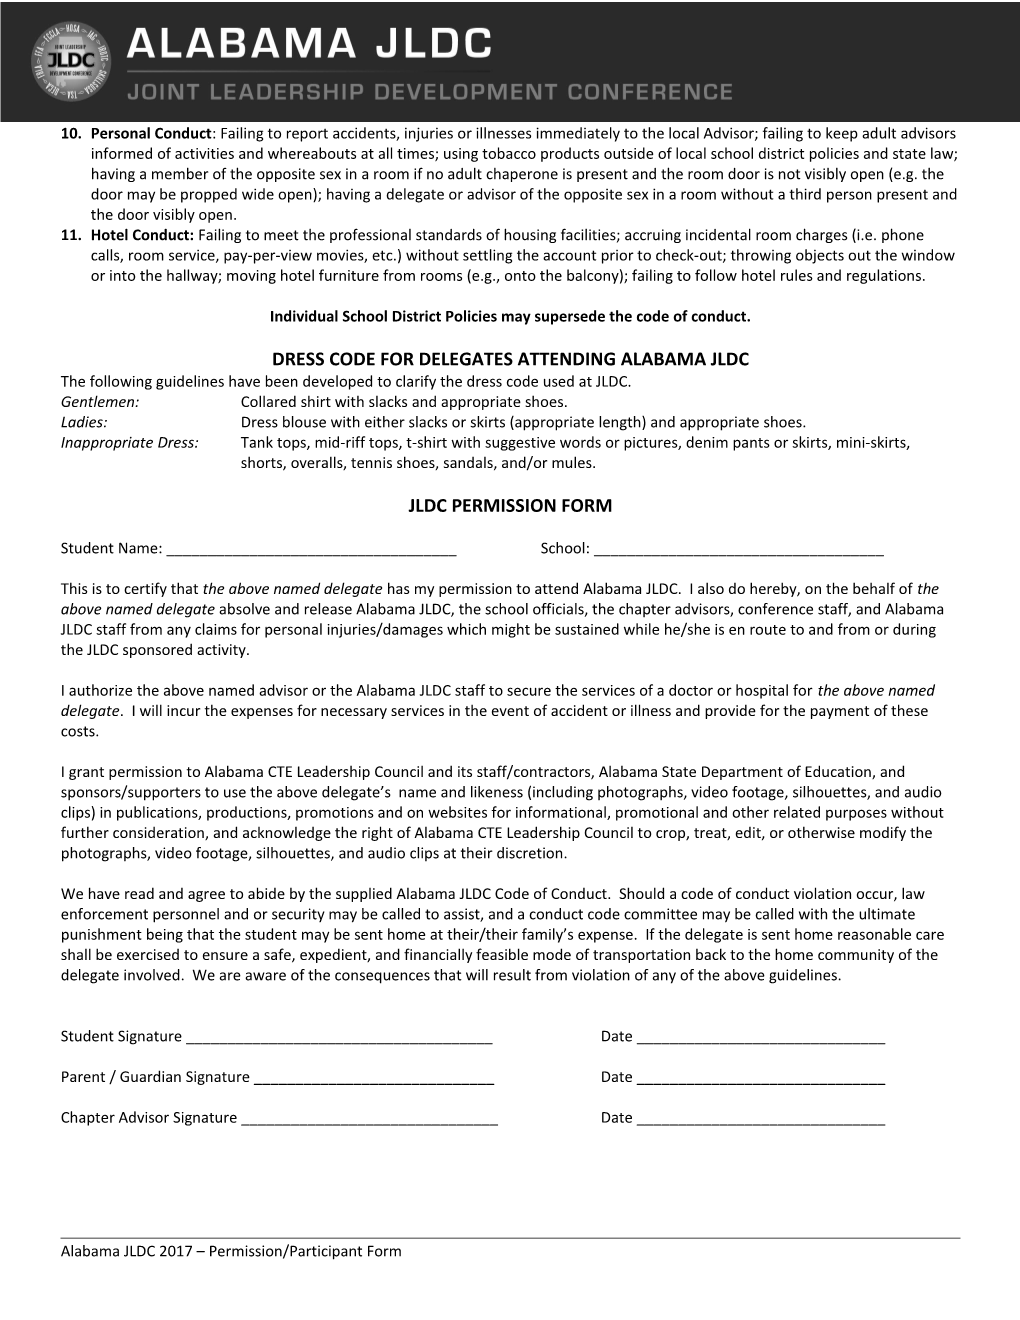 Permission/Participant Form (2 Pages Total)